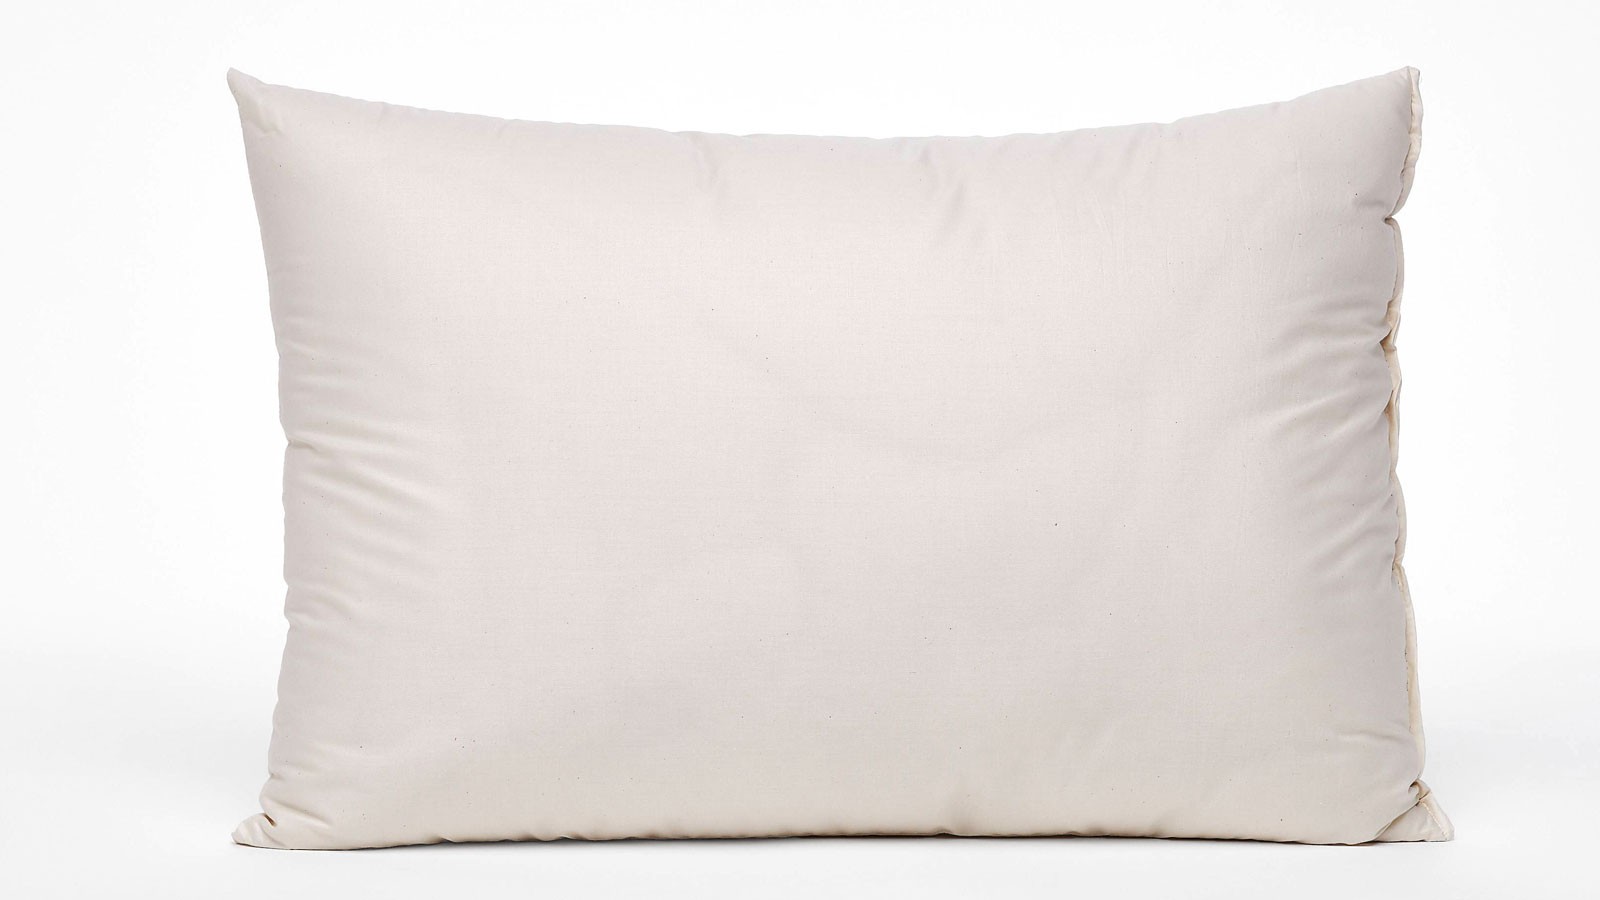 FLAXILK Pillow